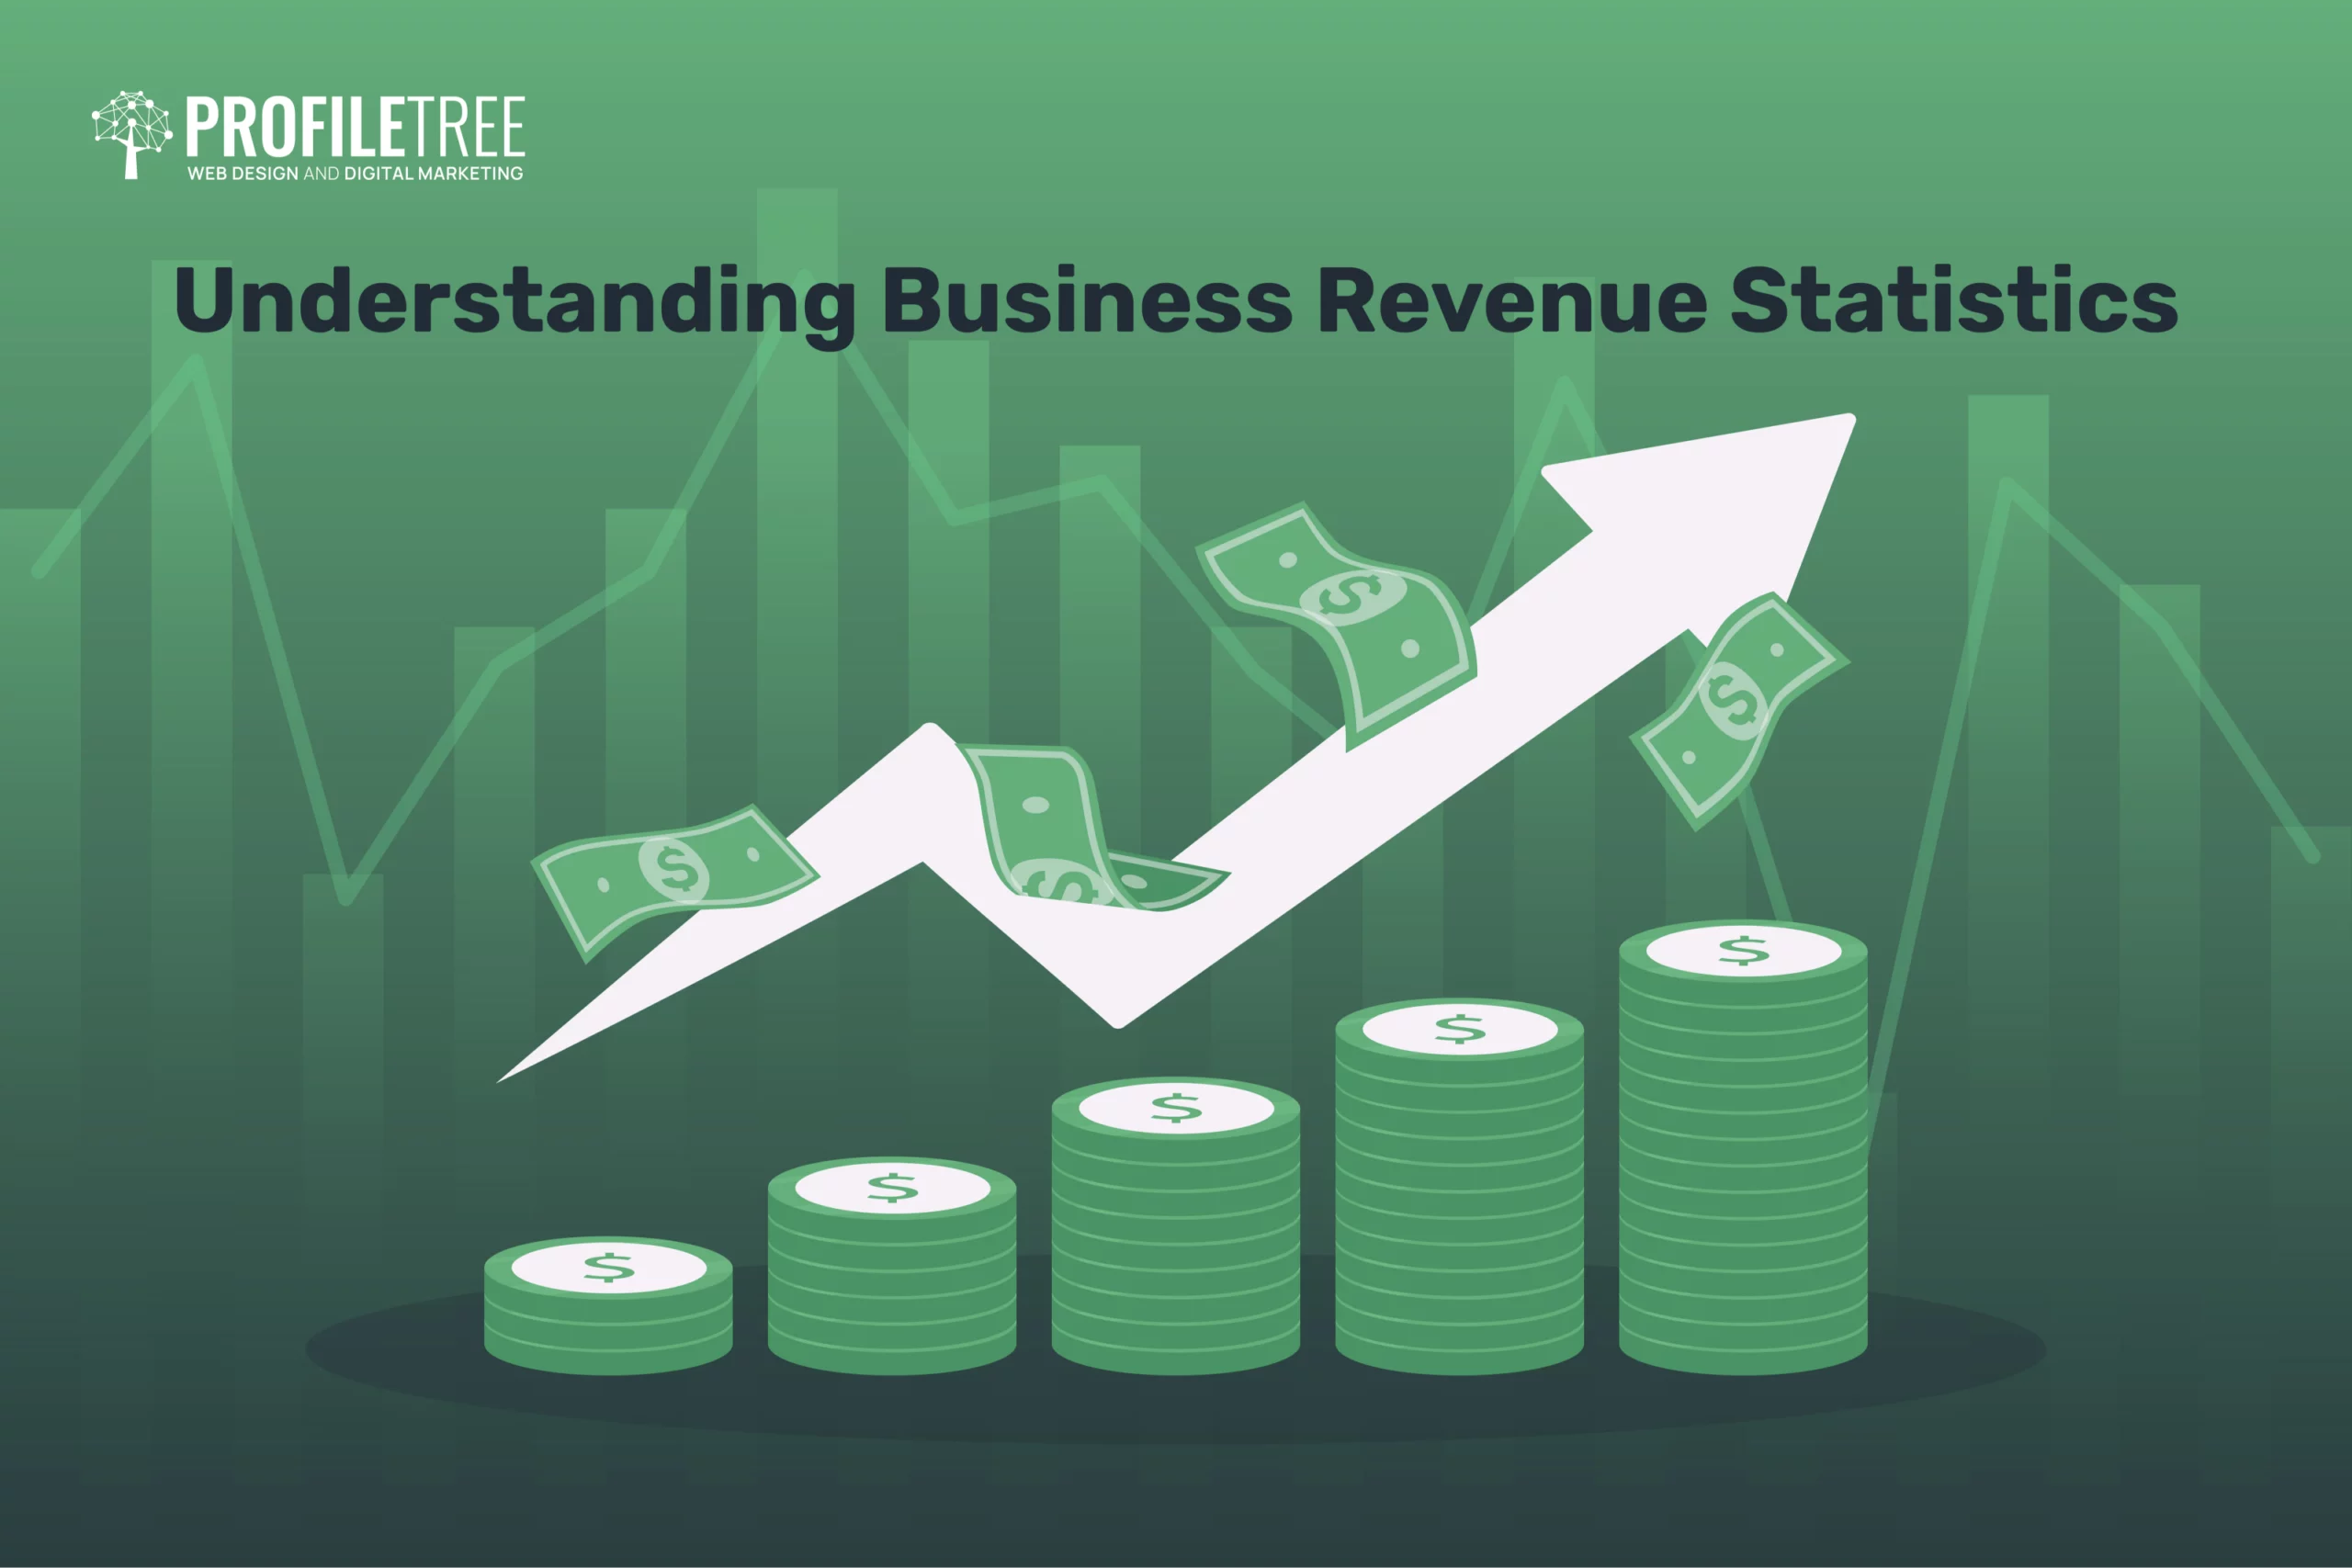 Business revenue statistics